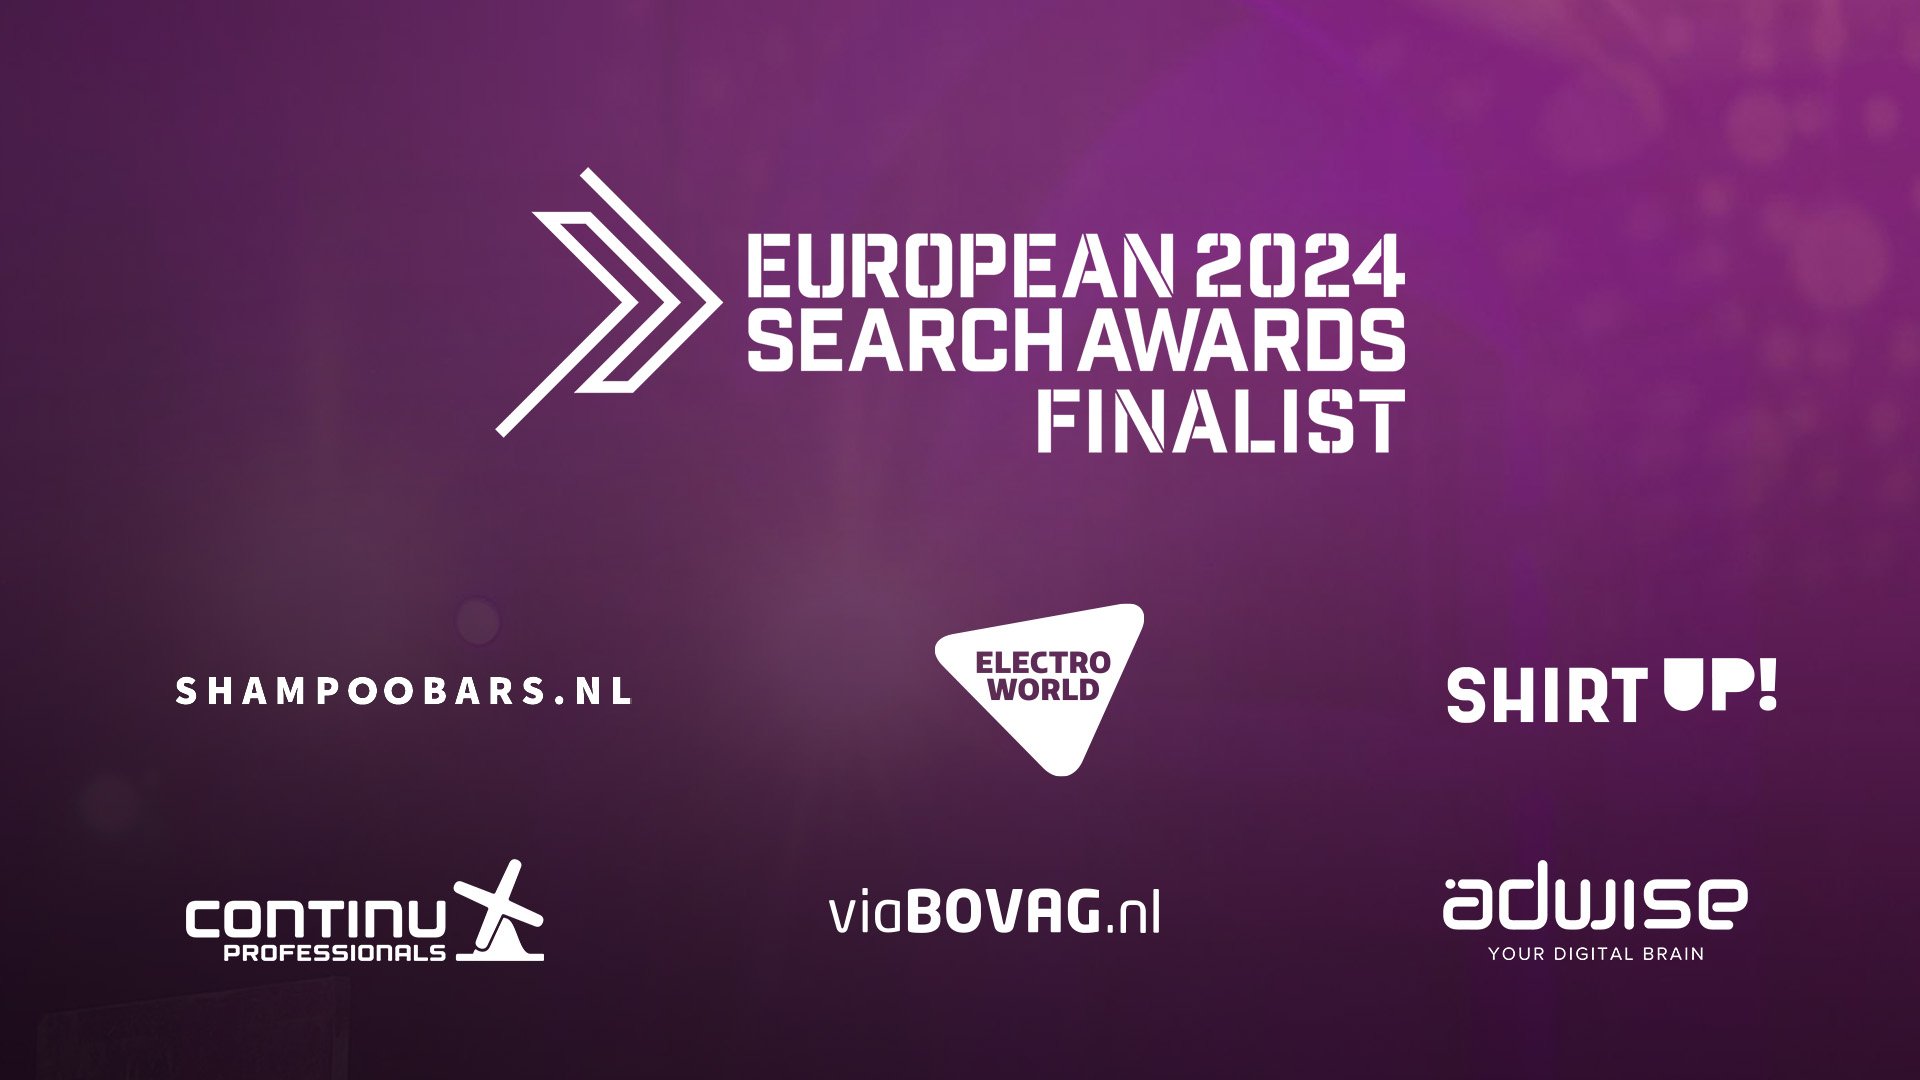 European Search Awards 2024